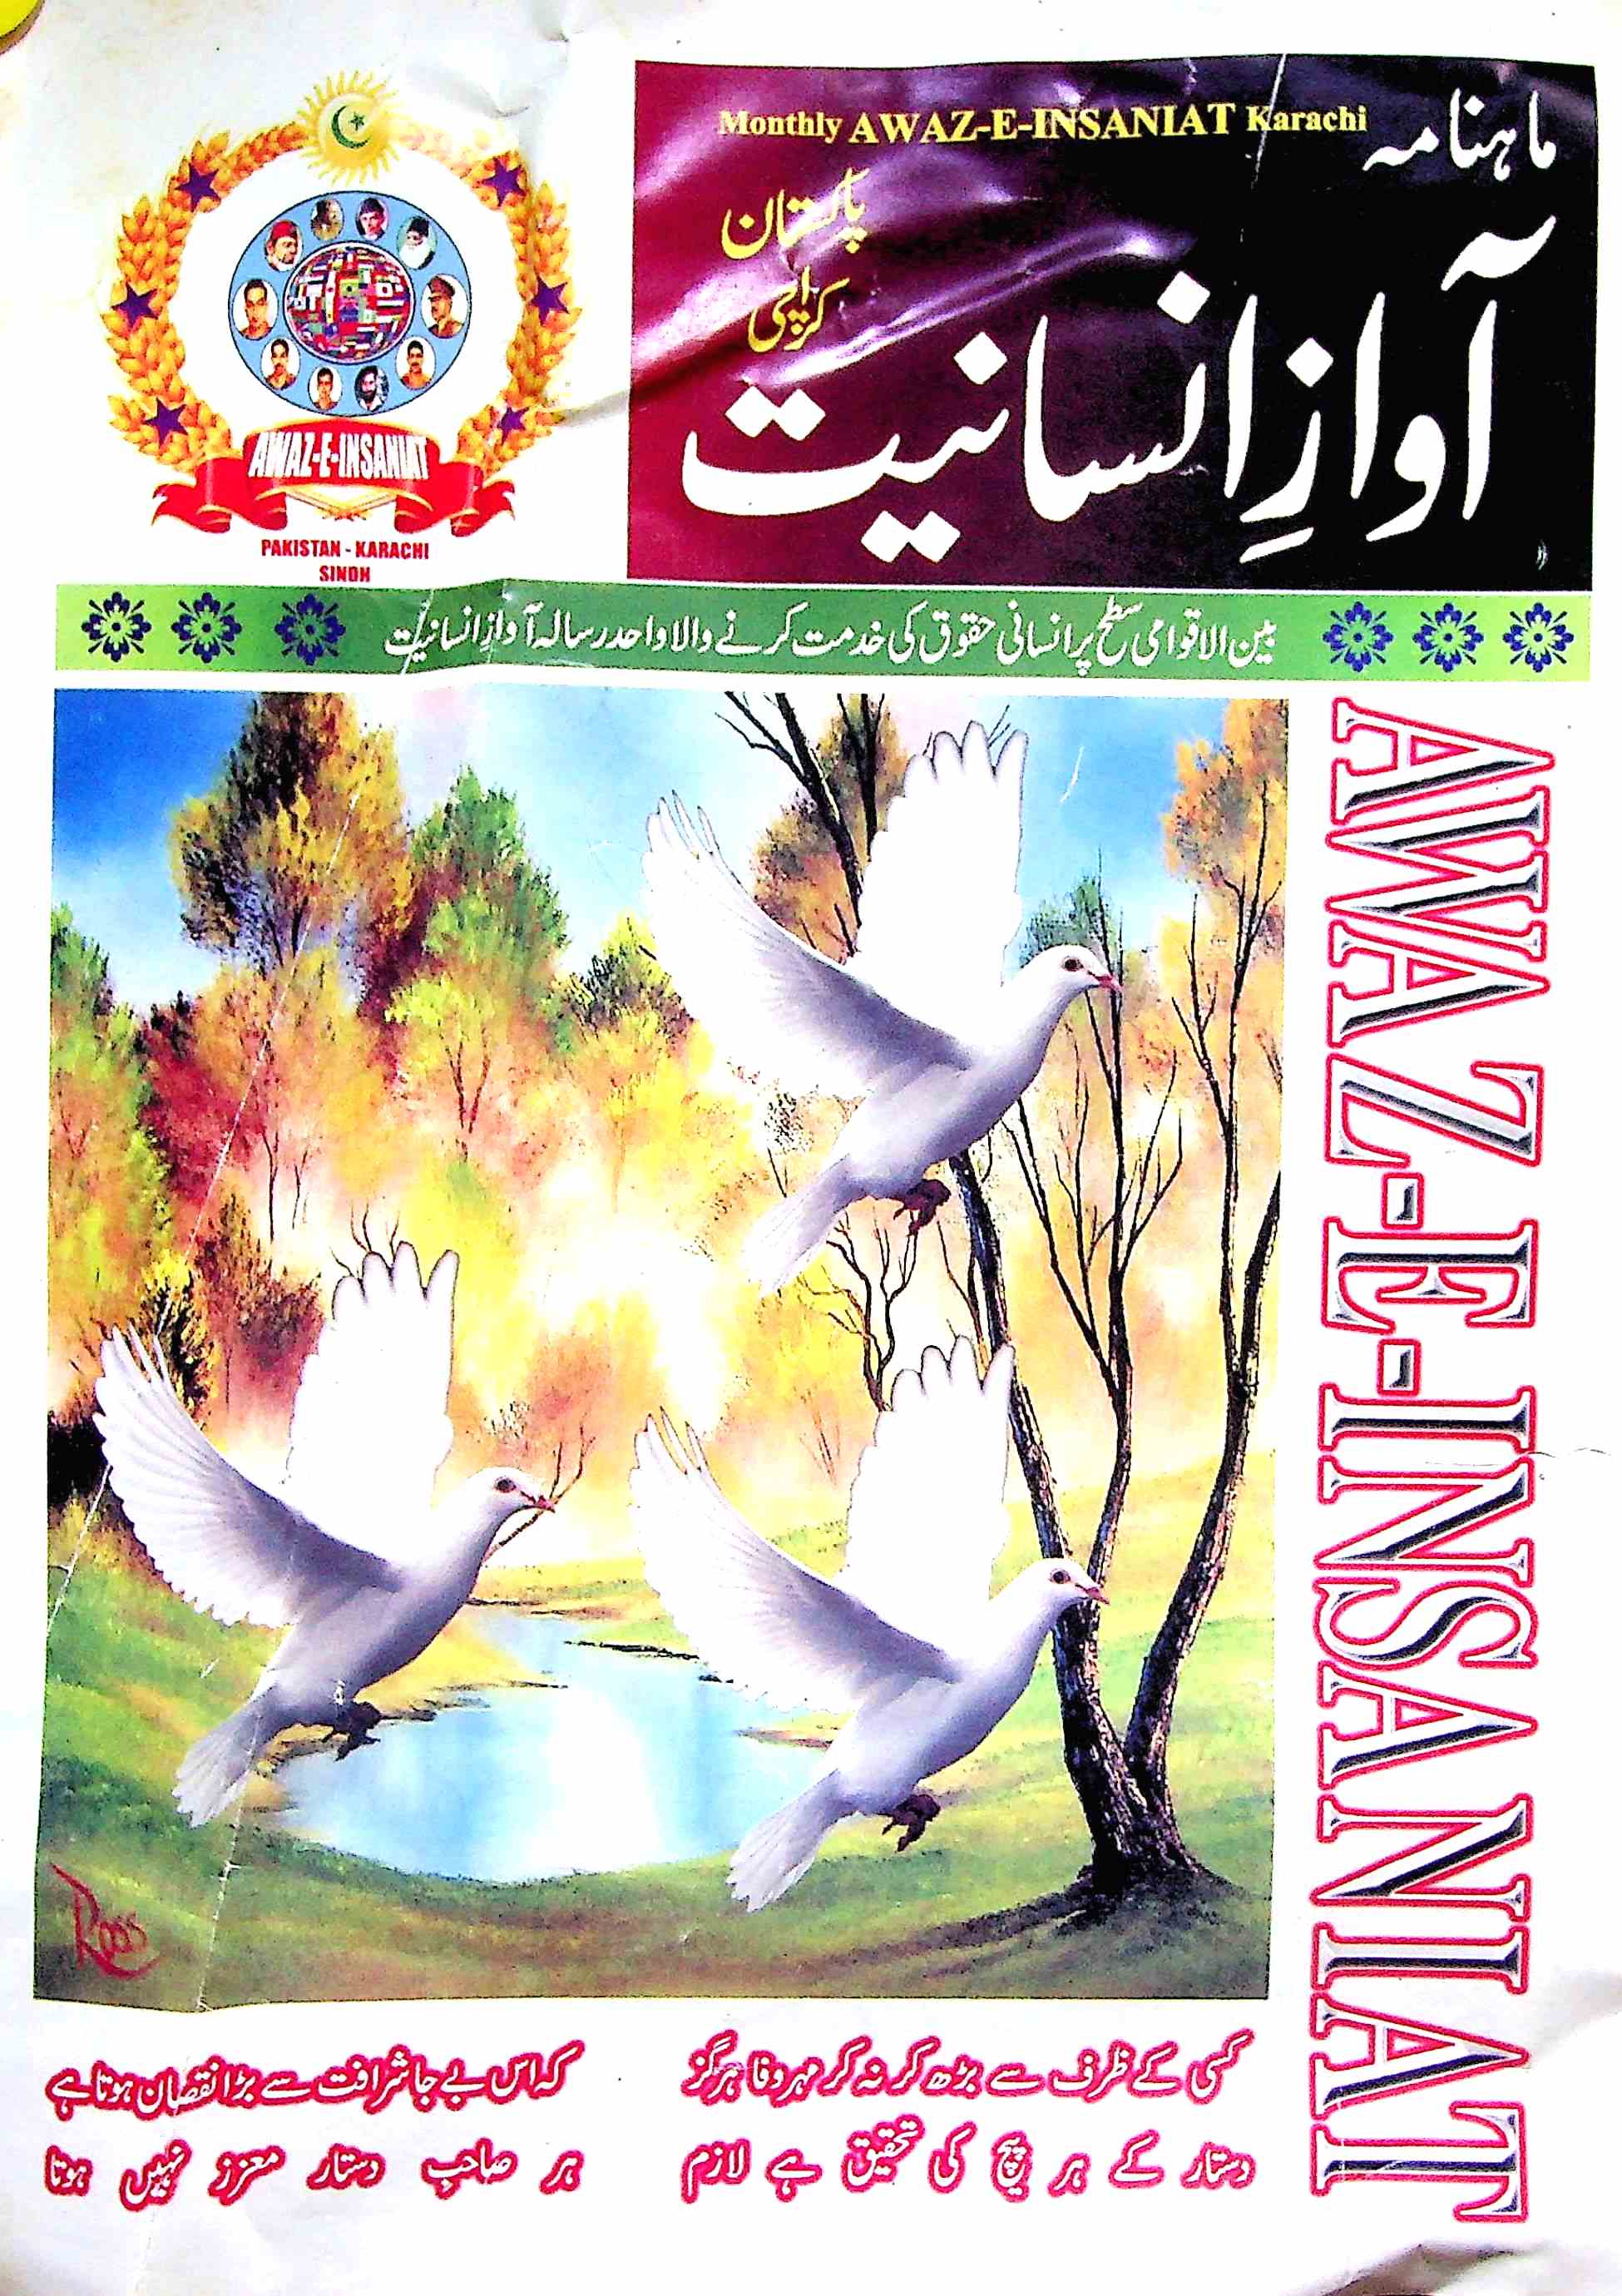 Awaz-E-Insaniyat Jild 11 Sep,Oct AV2K